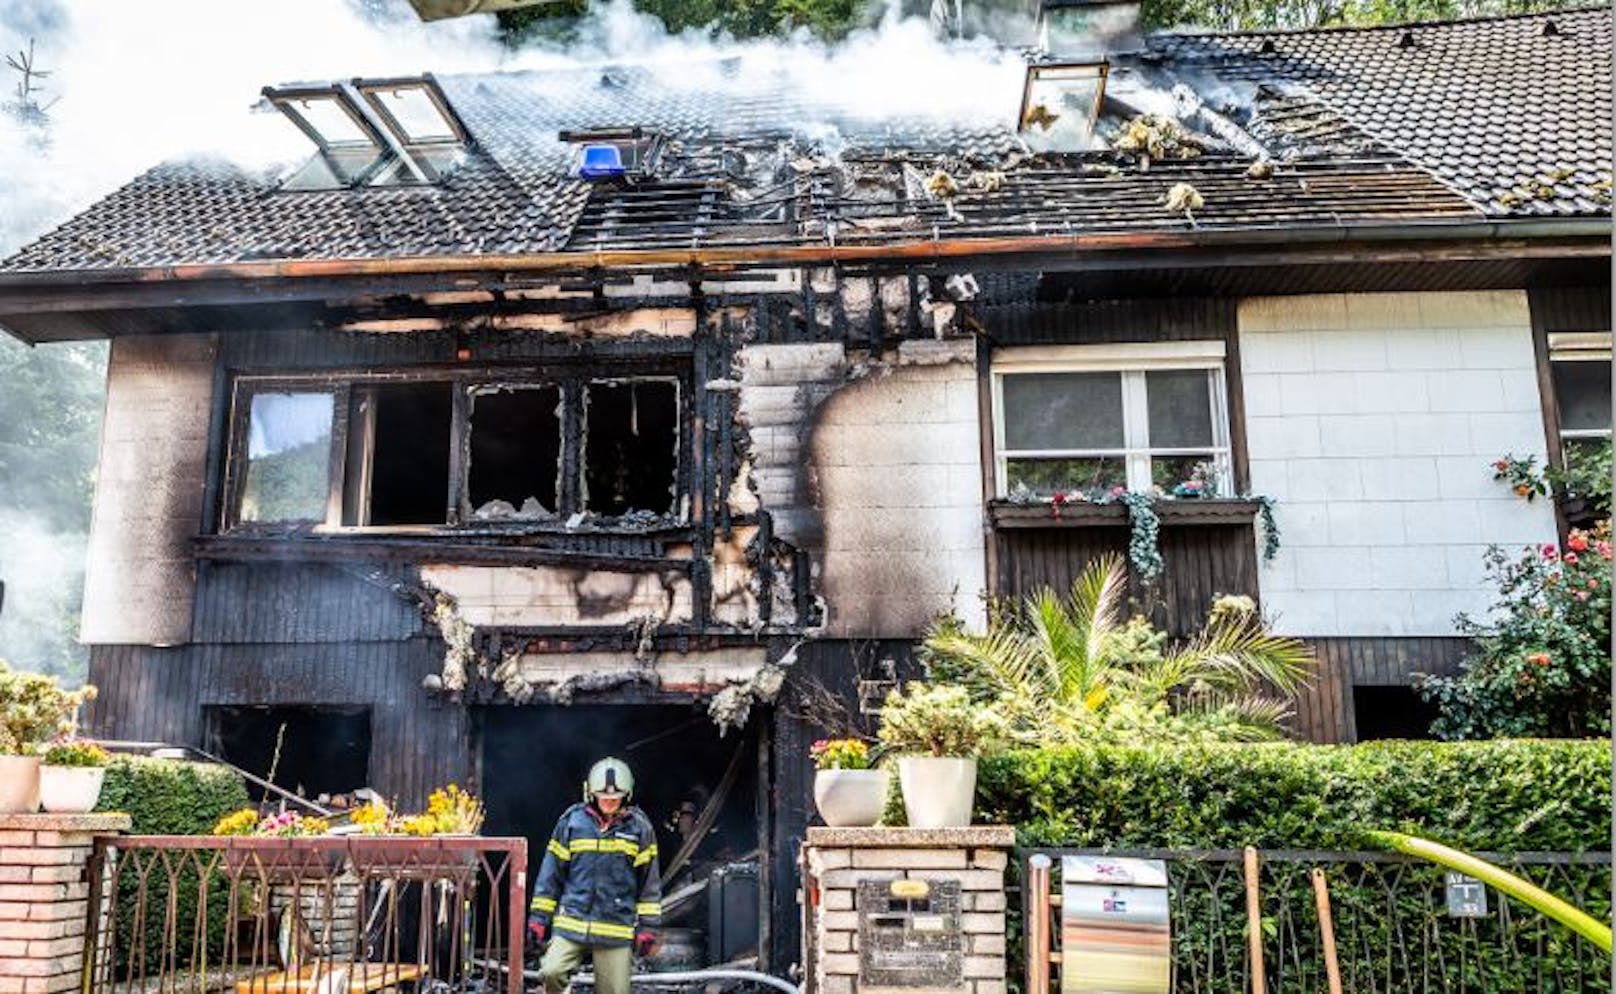 Nach einem lauten Knall stand das Einfamilienhaus in Flammen.